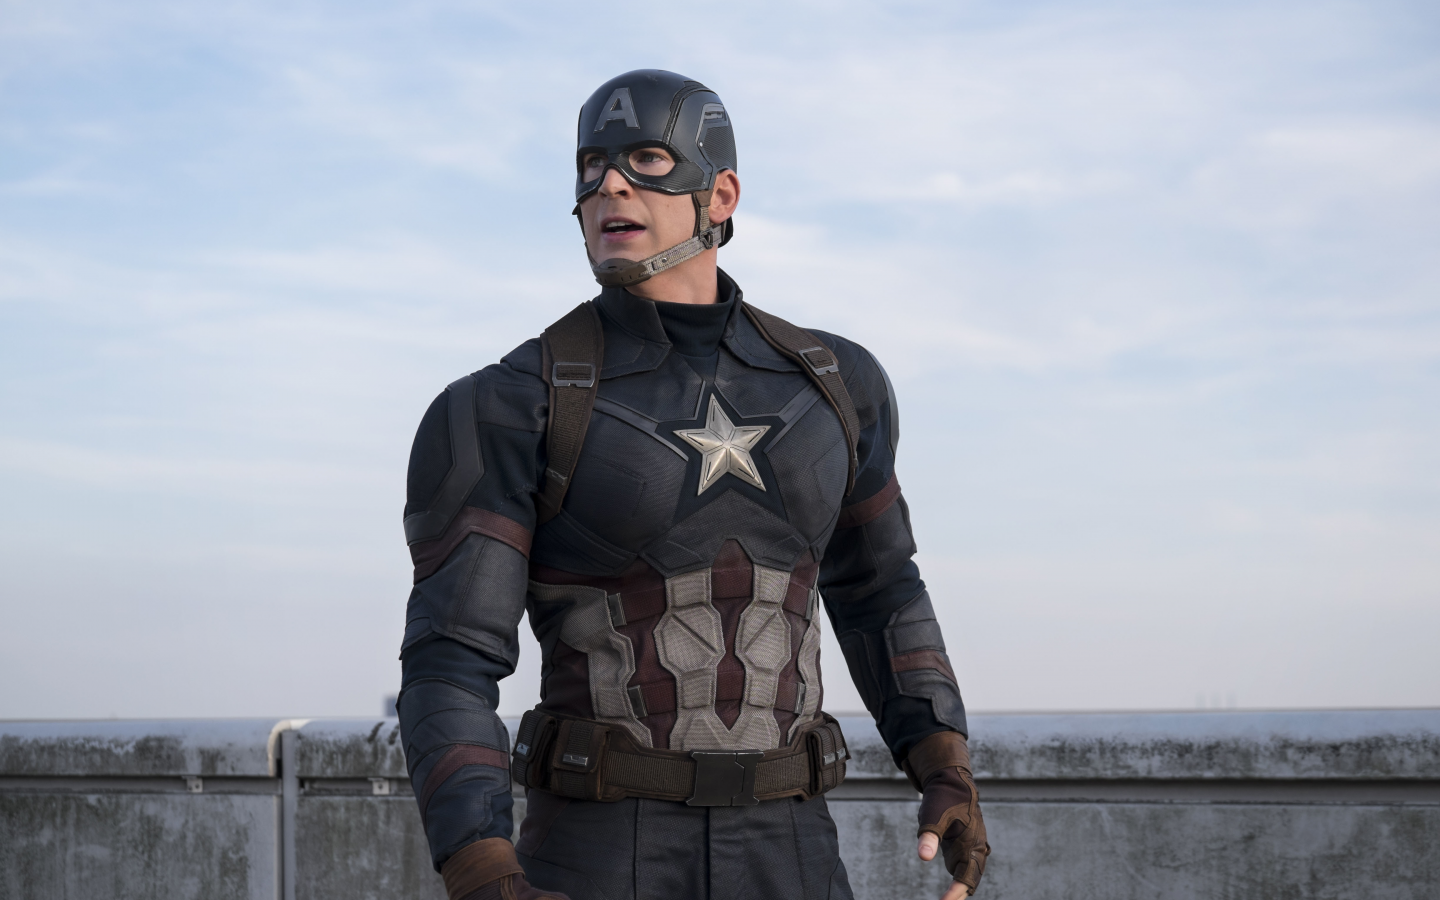 captain america civil war, первый мститель противостояние